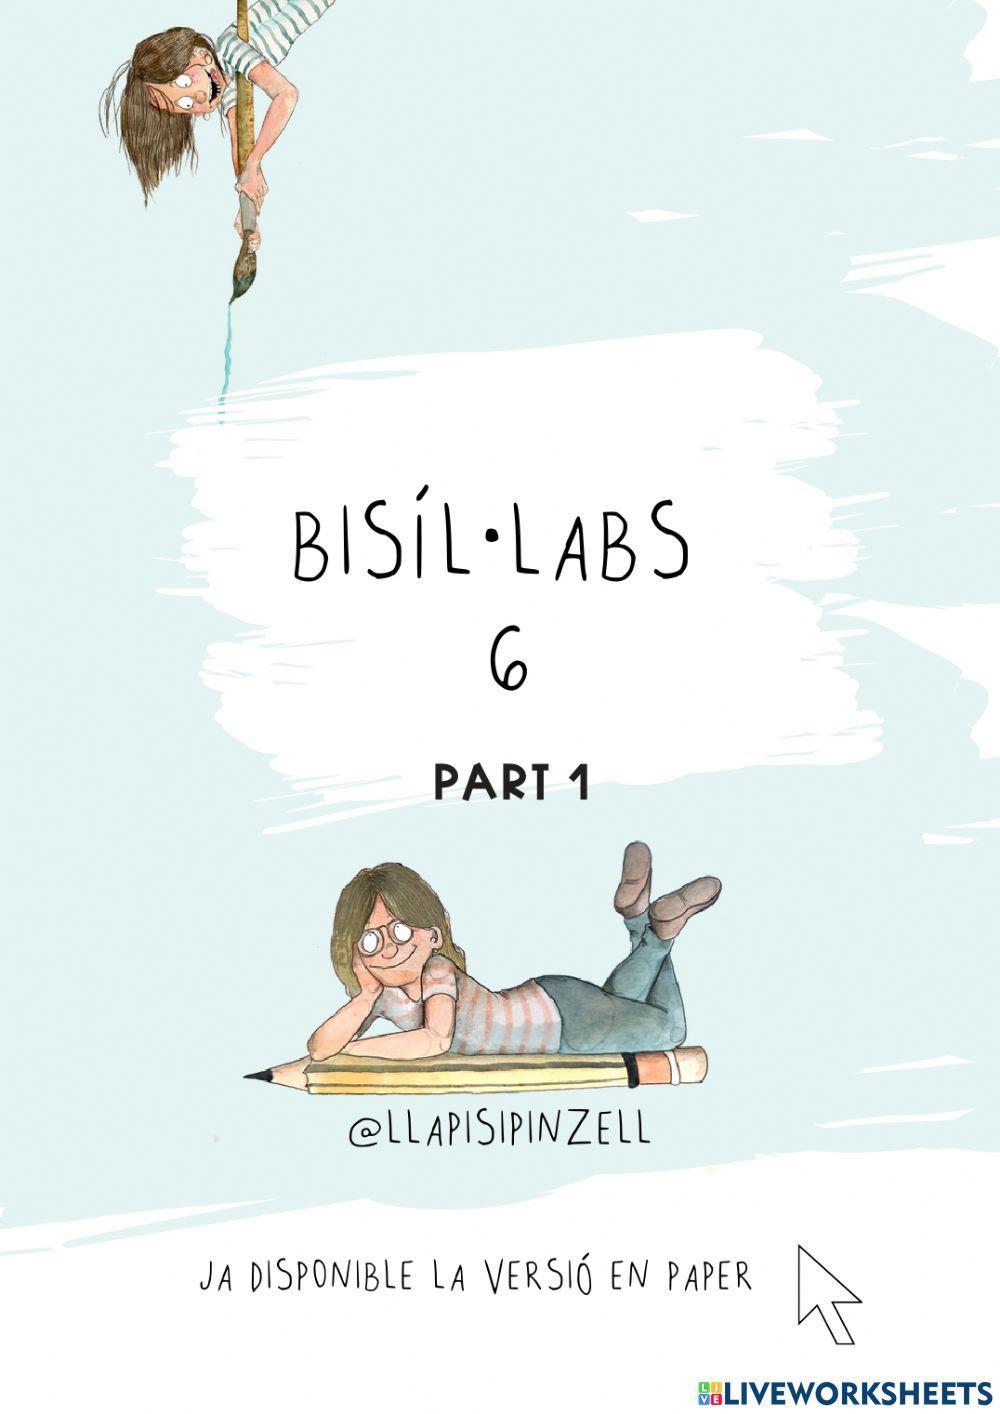 Bisíl·labs 6 primera part